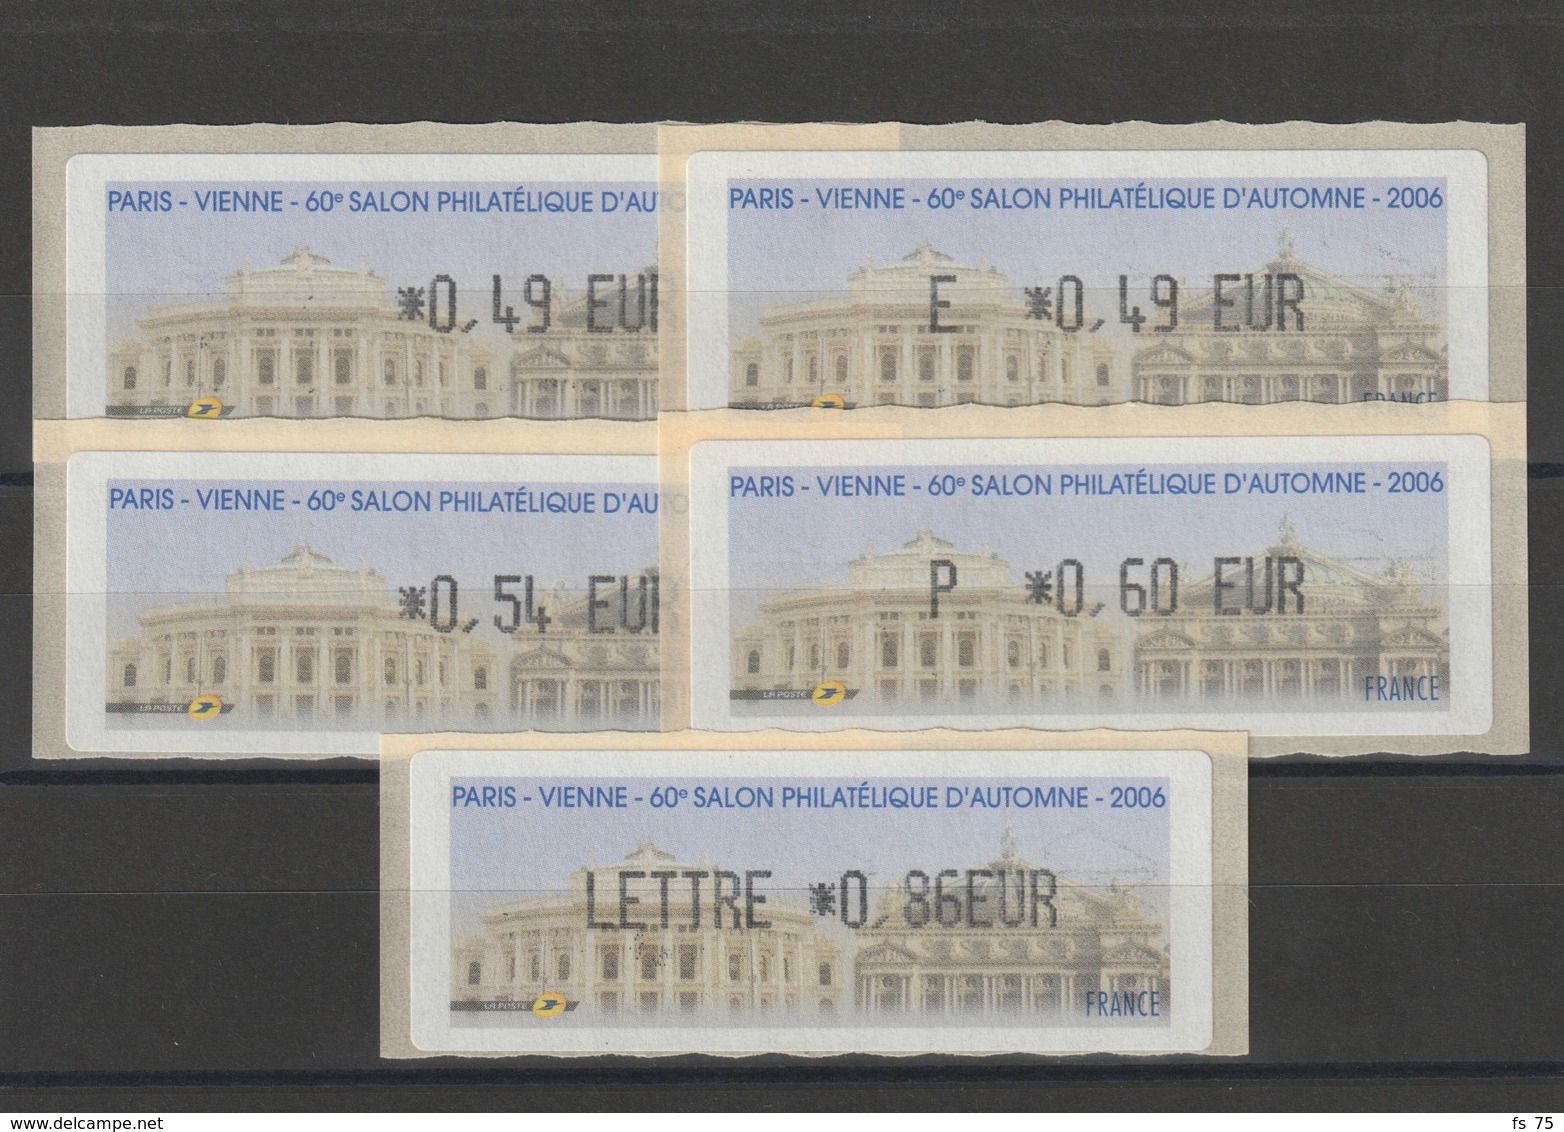 FRANCE - 5 VIGNETTES 0,49€, E. 0,49€, 0,54€, 0,60€ ET 0,86€ - PARIS - VIENNE - 60EME SALON PHILATELIQUE D'AUTOMNE 2006 - 1999-2009 Illustrated Franking Labels